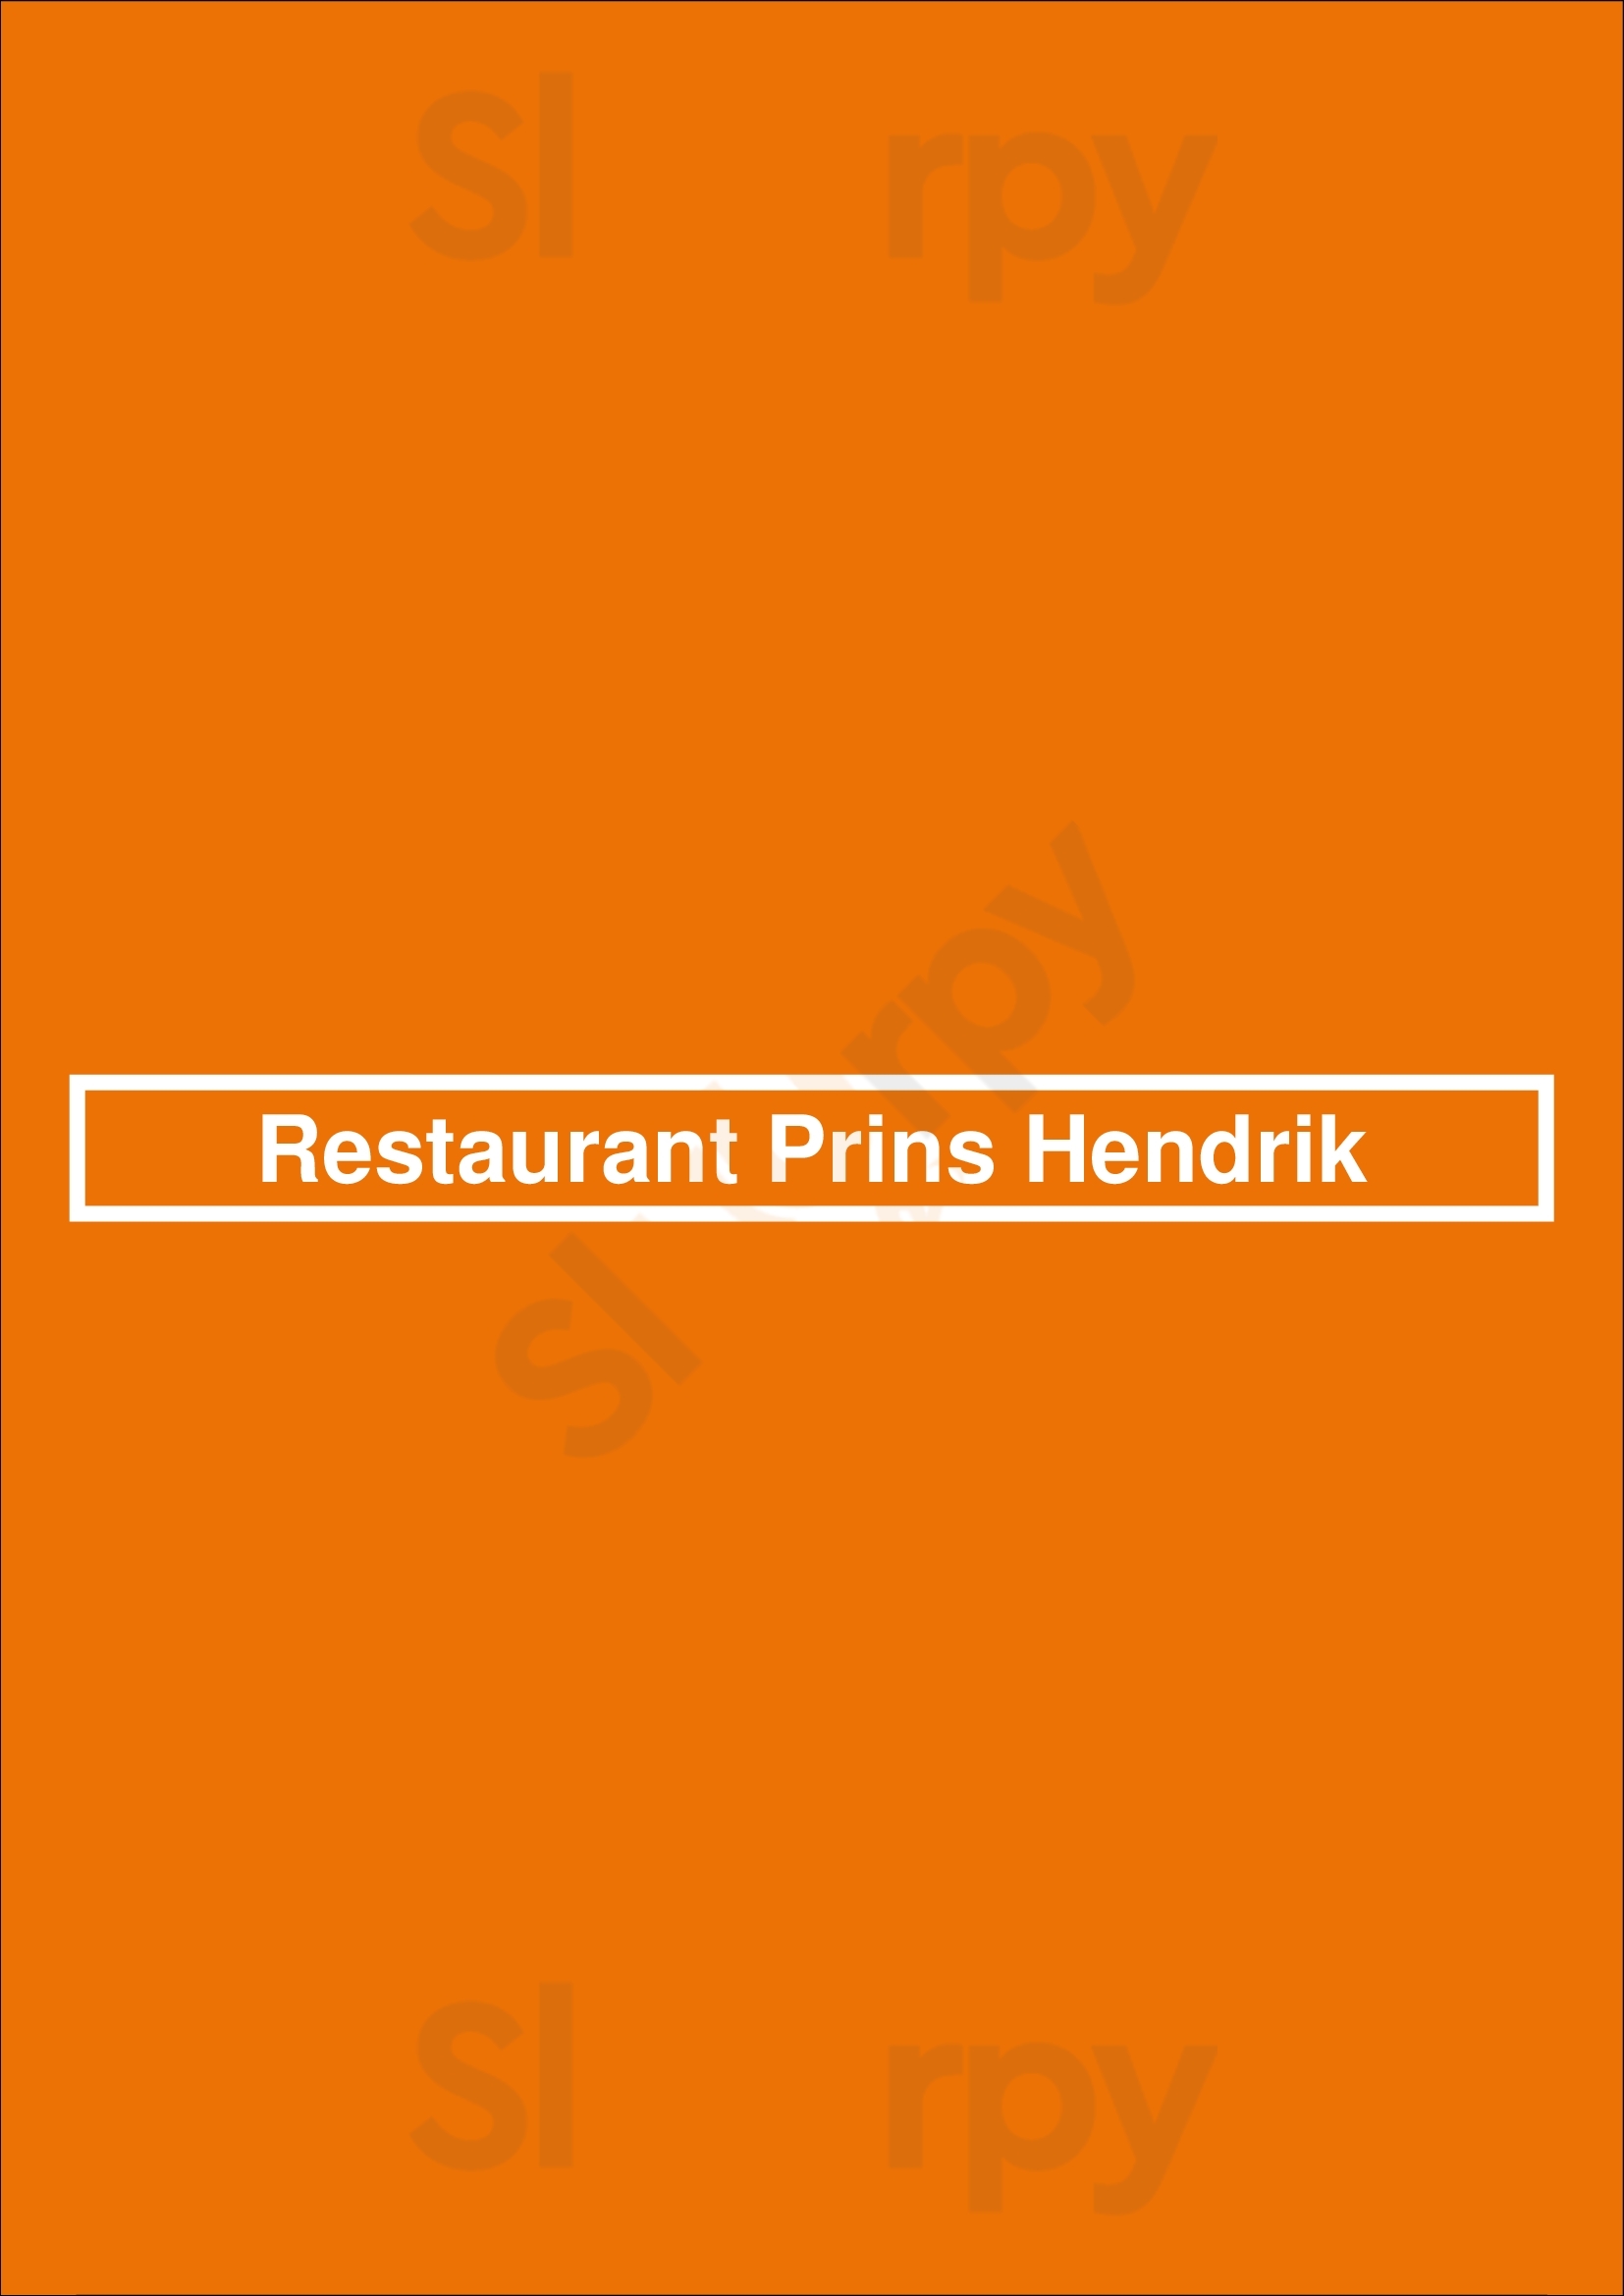 Restaurant Prins Hendrik Oosterend Menu - 1